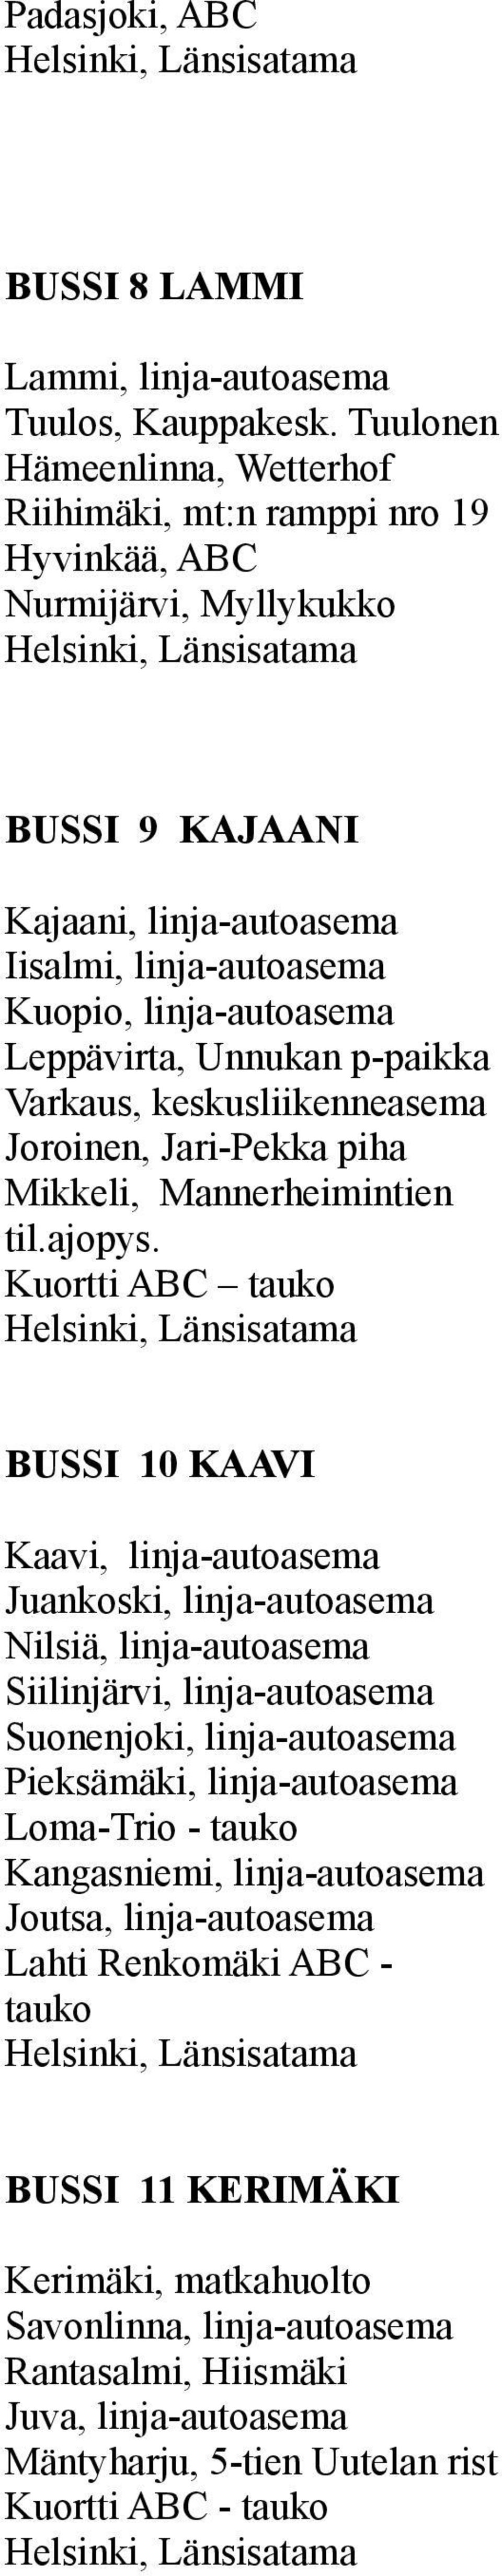 Leppävirta, Unnukan p-paikka Varkaus, keskusliikenneasema Joroinen, Jari-Pekka piha Mikkeli, Mannerheimintien til.ajopys.